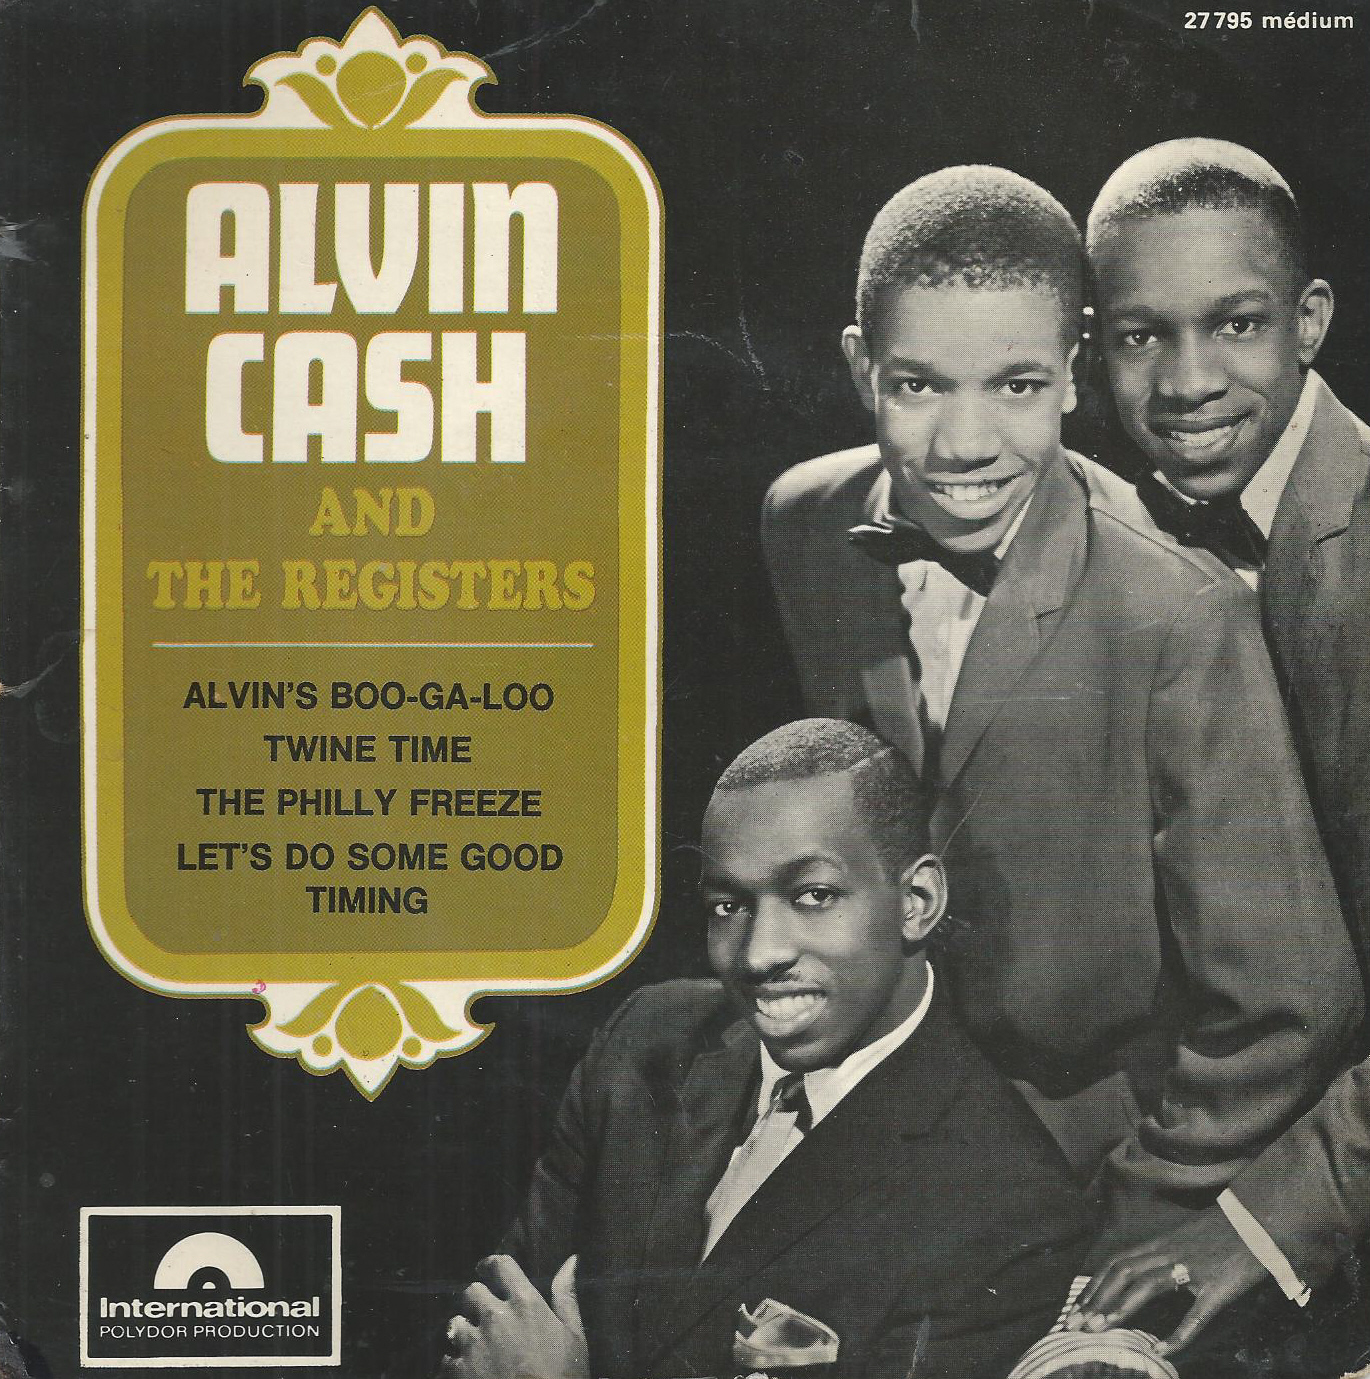 alvin-cash-images